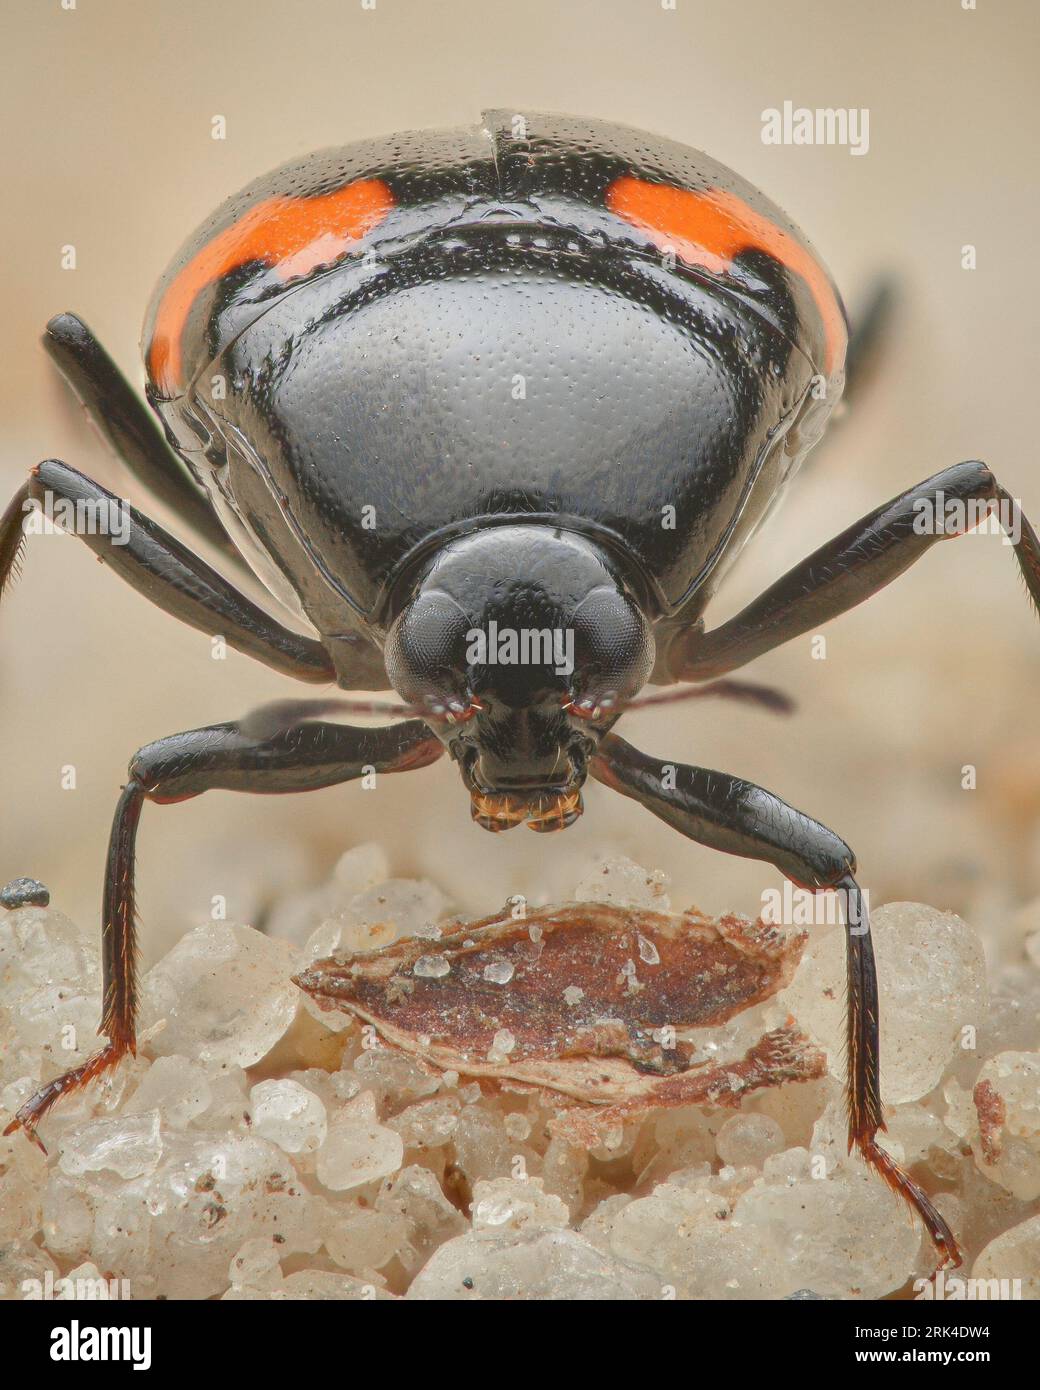 Portrait of a Rove beetle, Orange-spotted Scaphidium (Scaphidium quadrimaculatum) Stock Photo